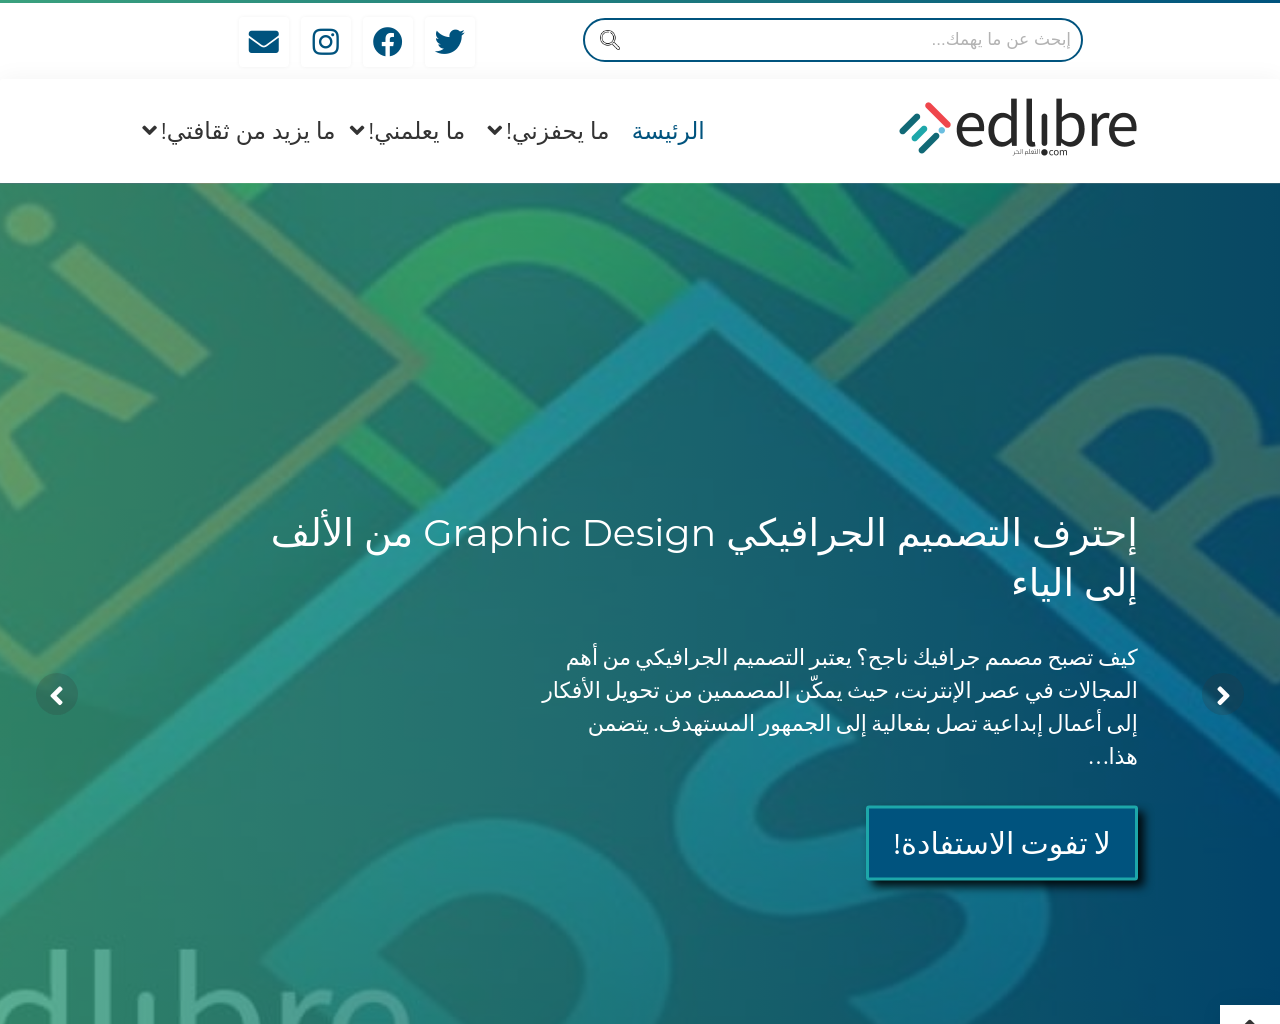 edlibre.com